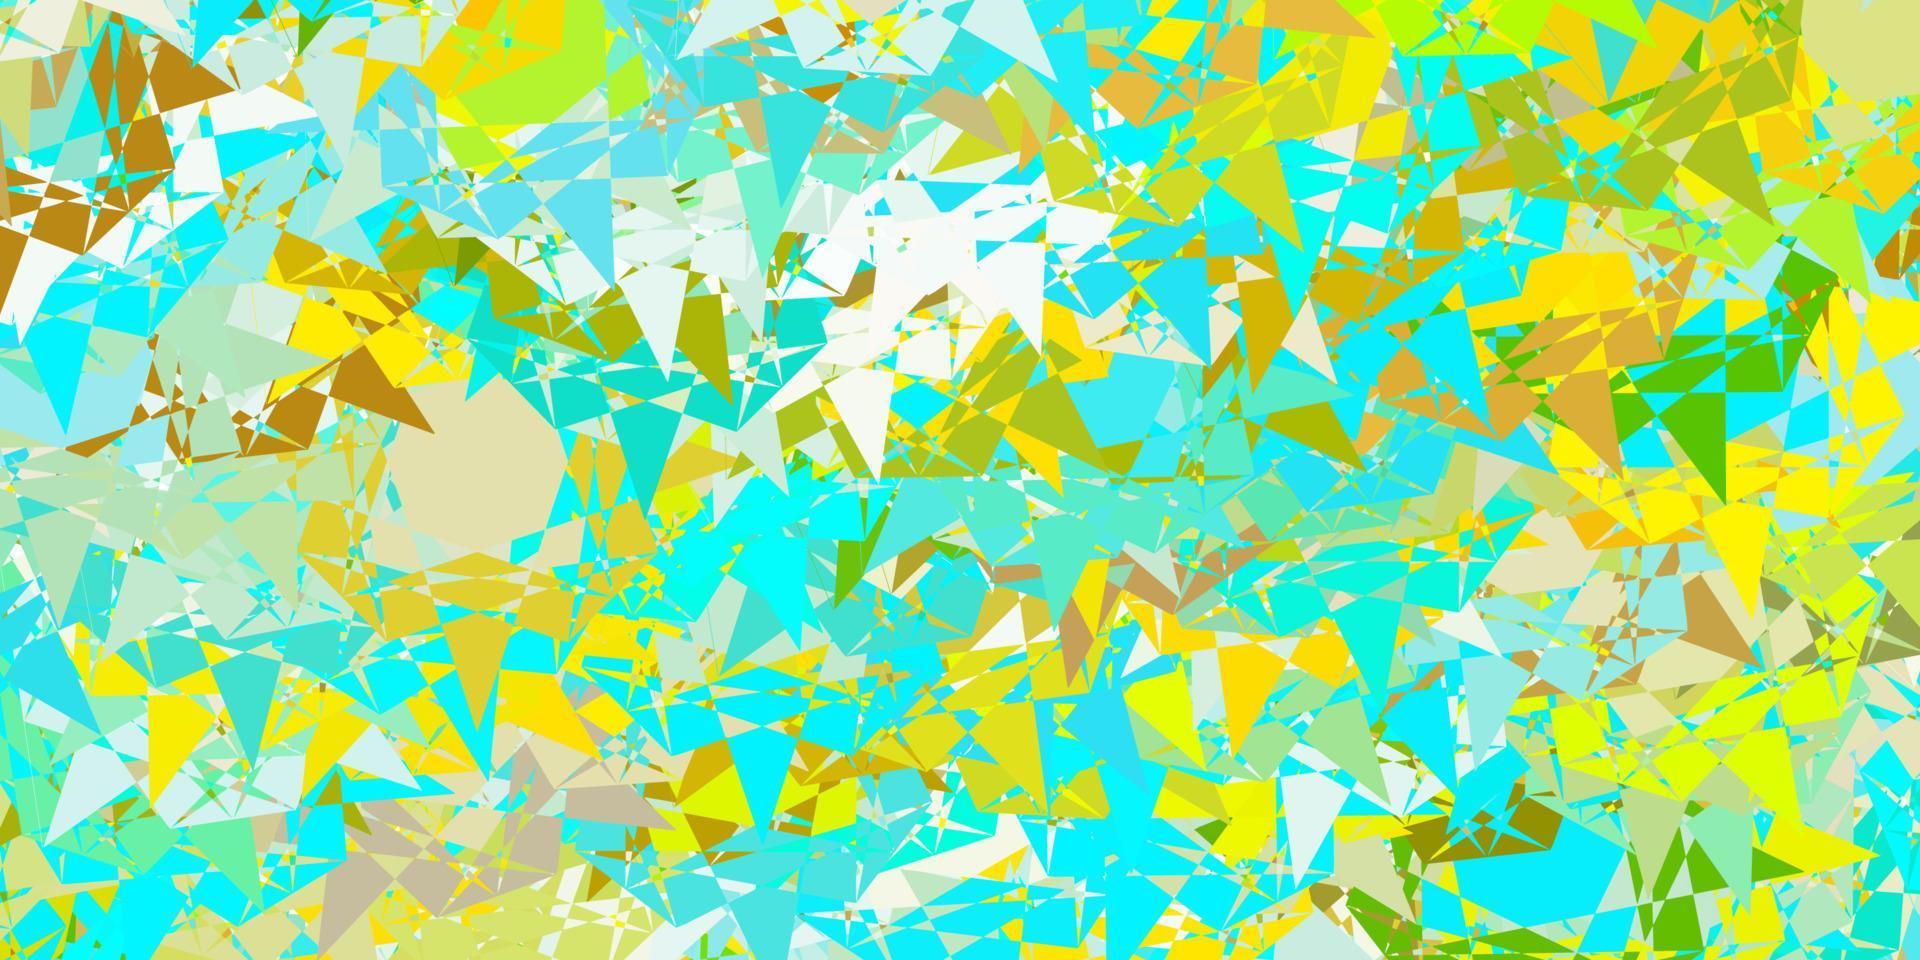 ljusblå, gul vektorbakgrund med trianglar. vektor